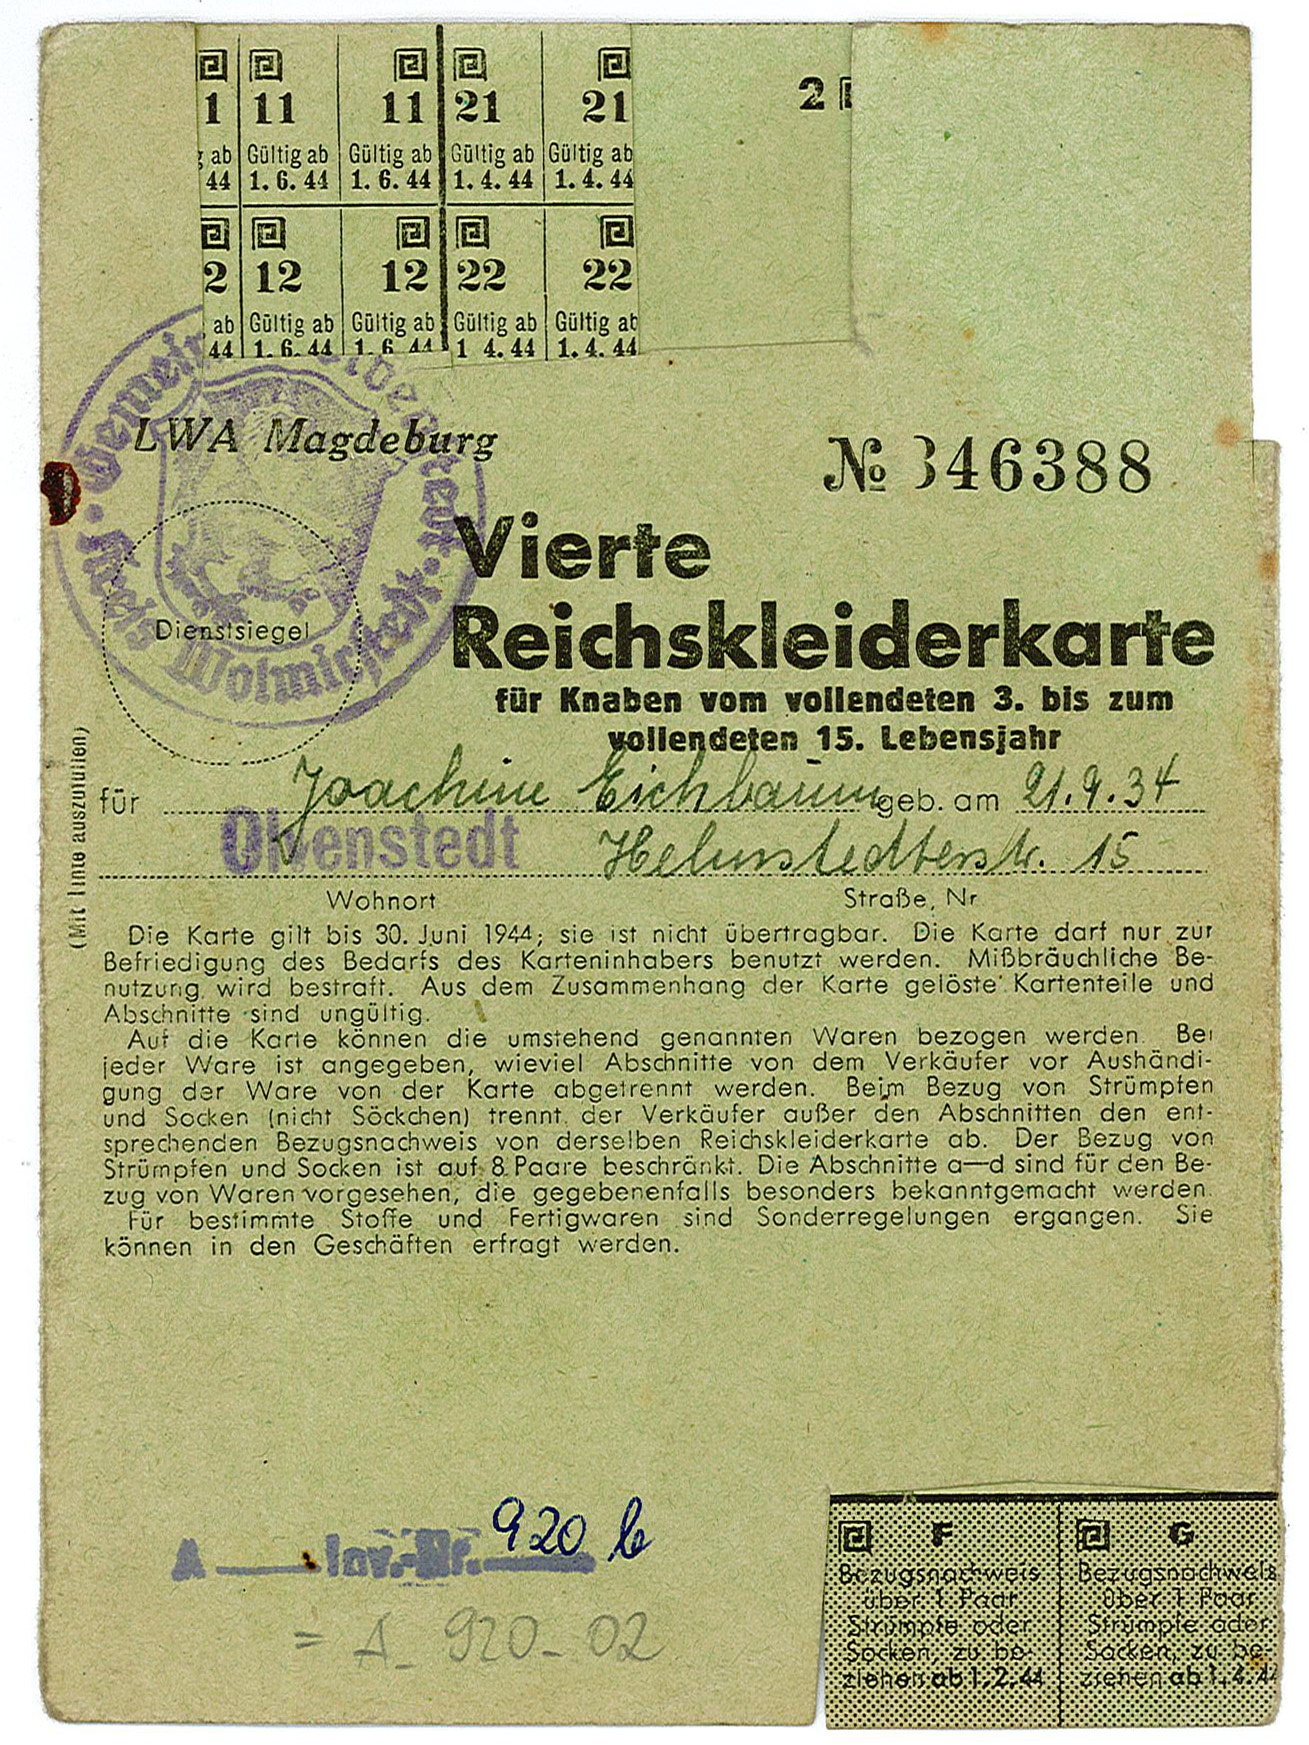 Vierte Reichskleiderkarte für Knaben für Joachim Eichbaum, 1943/44 (Museum Wolmirstedt RR-F)